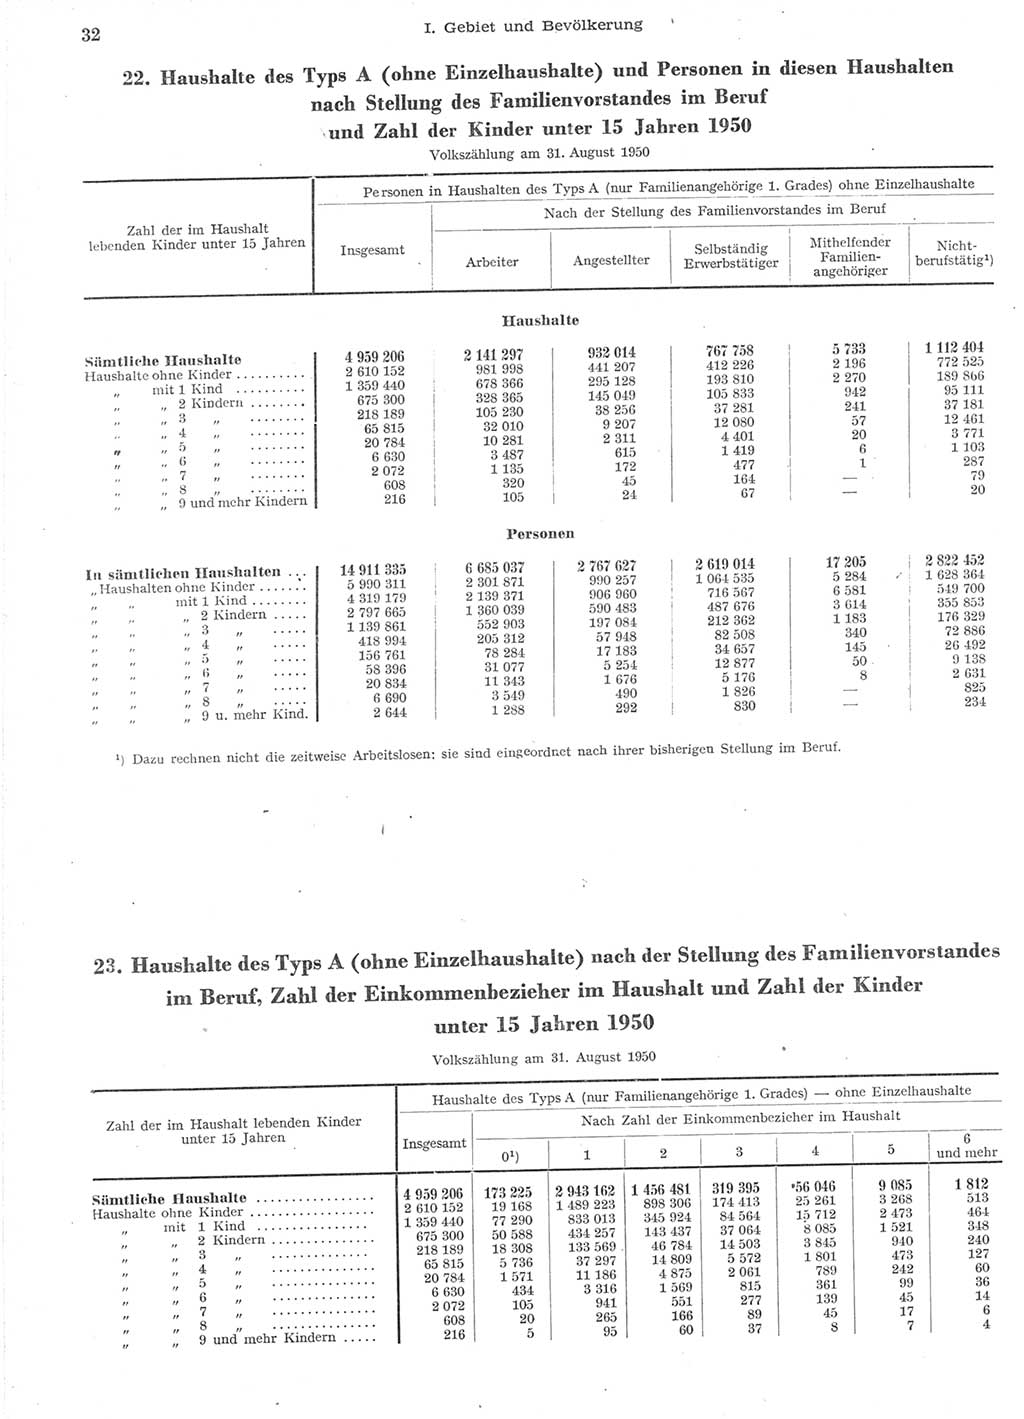 Statistisches Jahrbuch der Deutschen Demokratischen Republik (DDR) 1957, Seite 32 (Stat. Jb. DDR 1957, S. 32)